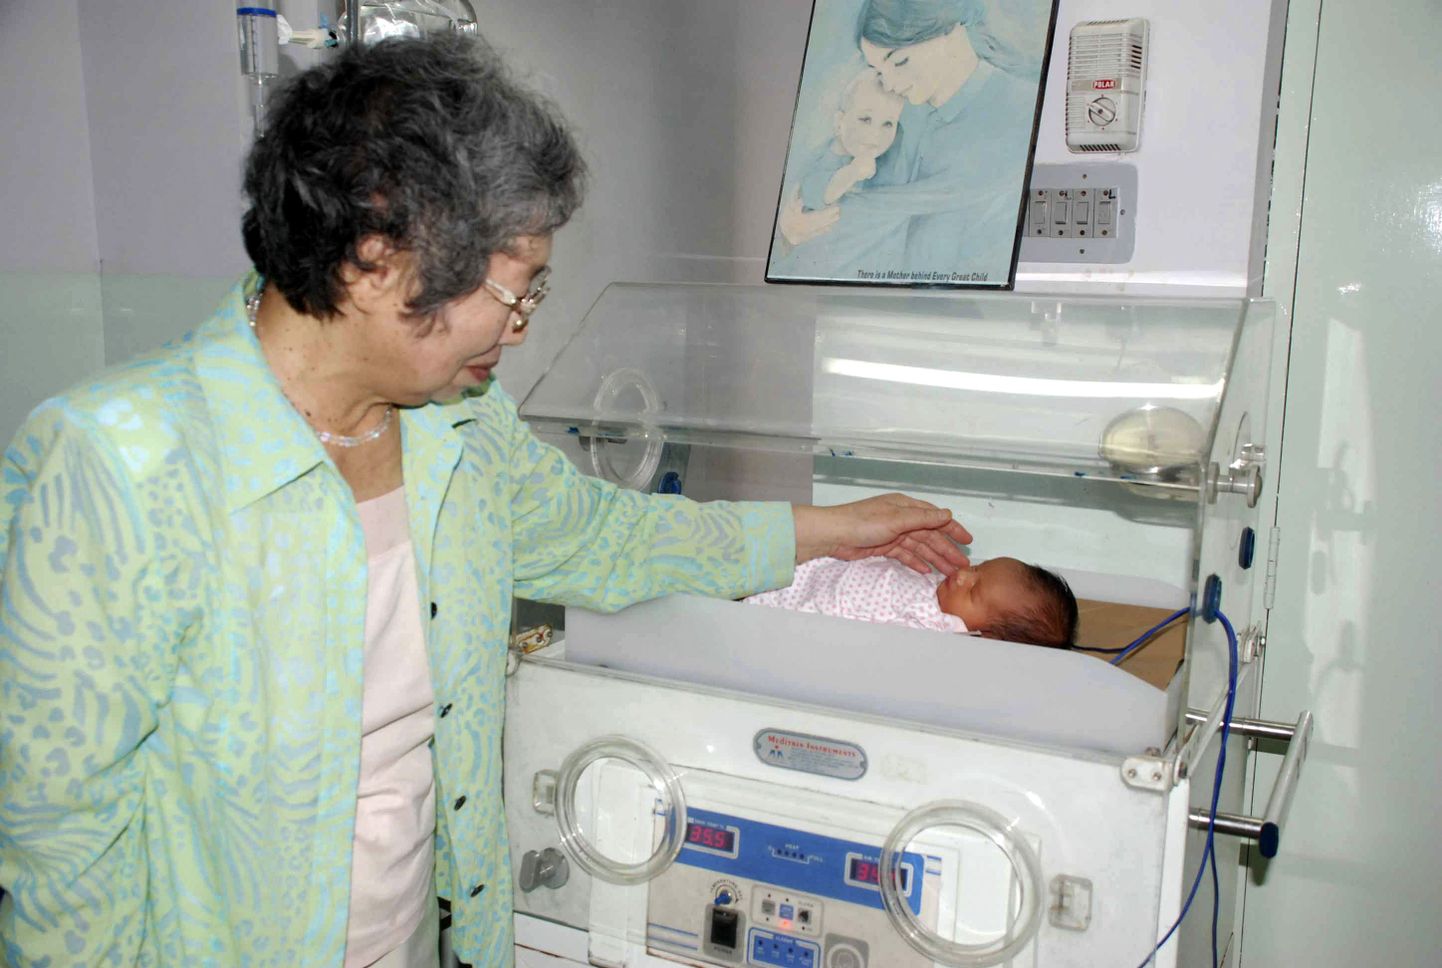 61-aastane jaapanlanna sünnitas lapselapse